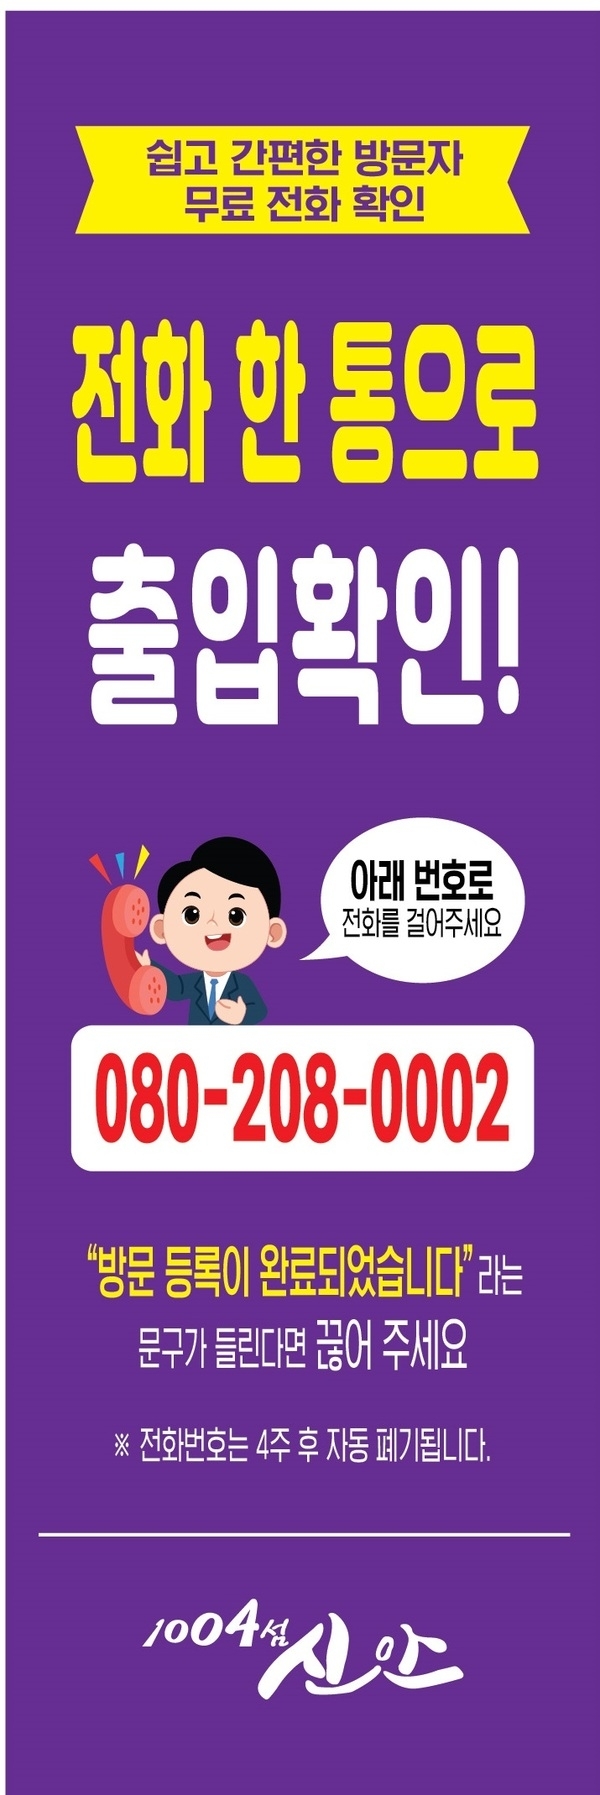 신안군, 코로나19 대응‘전화 출입관리서비스’도입 1